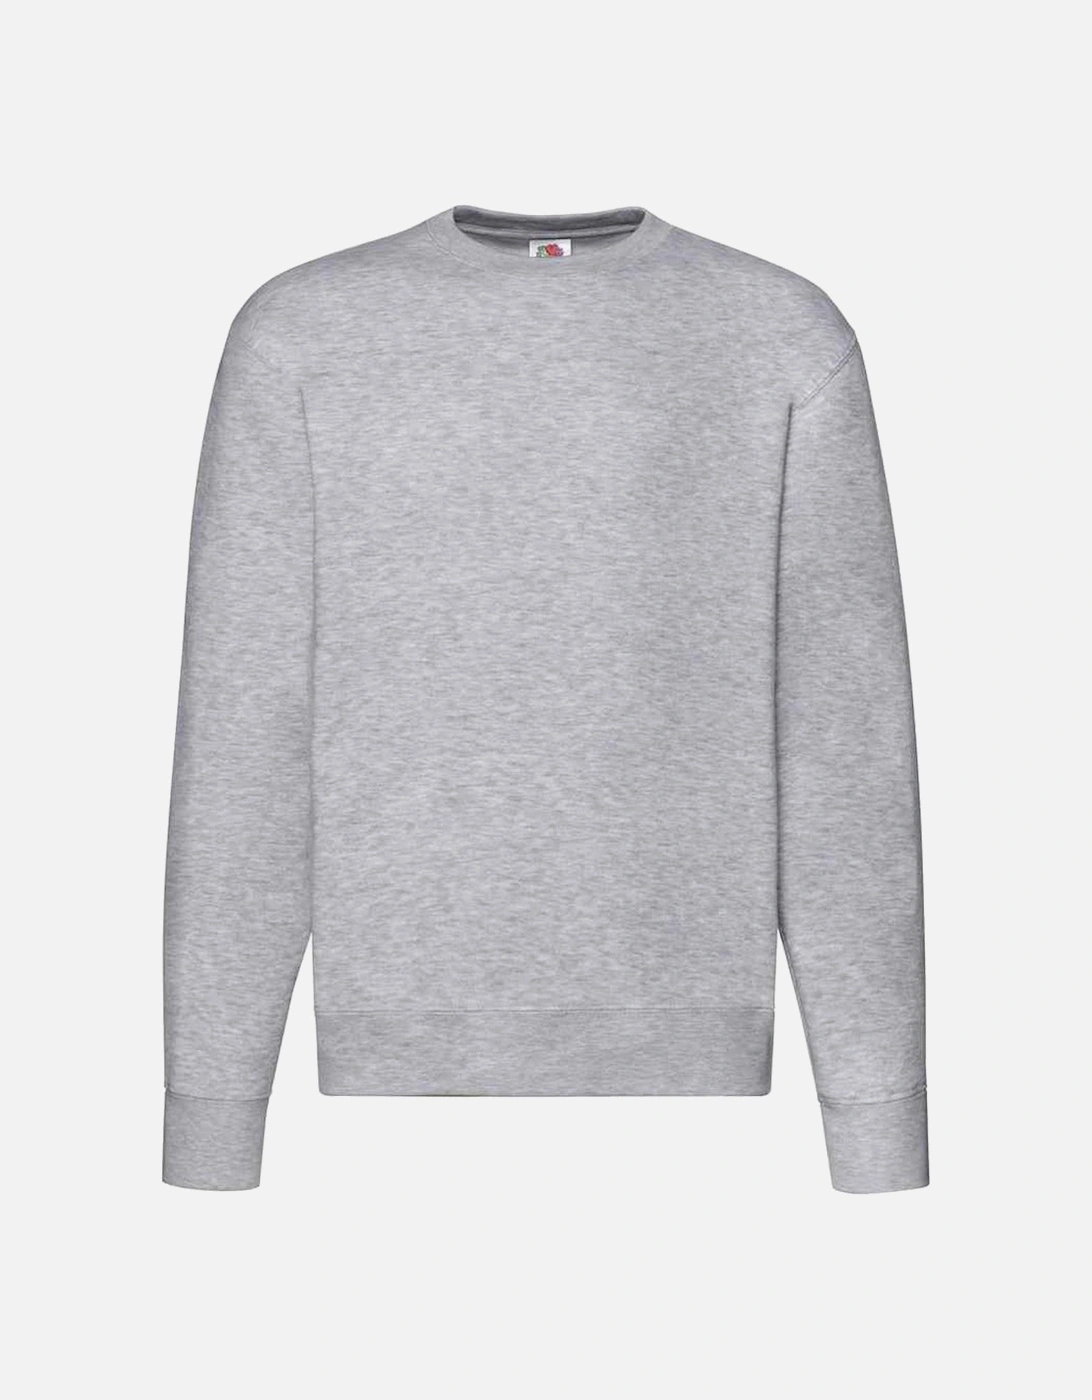 Unisex Adult Premium Drop Shoulder Sweatshirt, 4 of 3